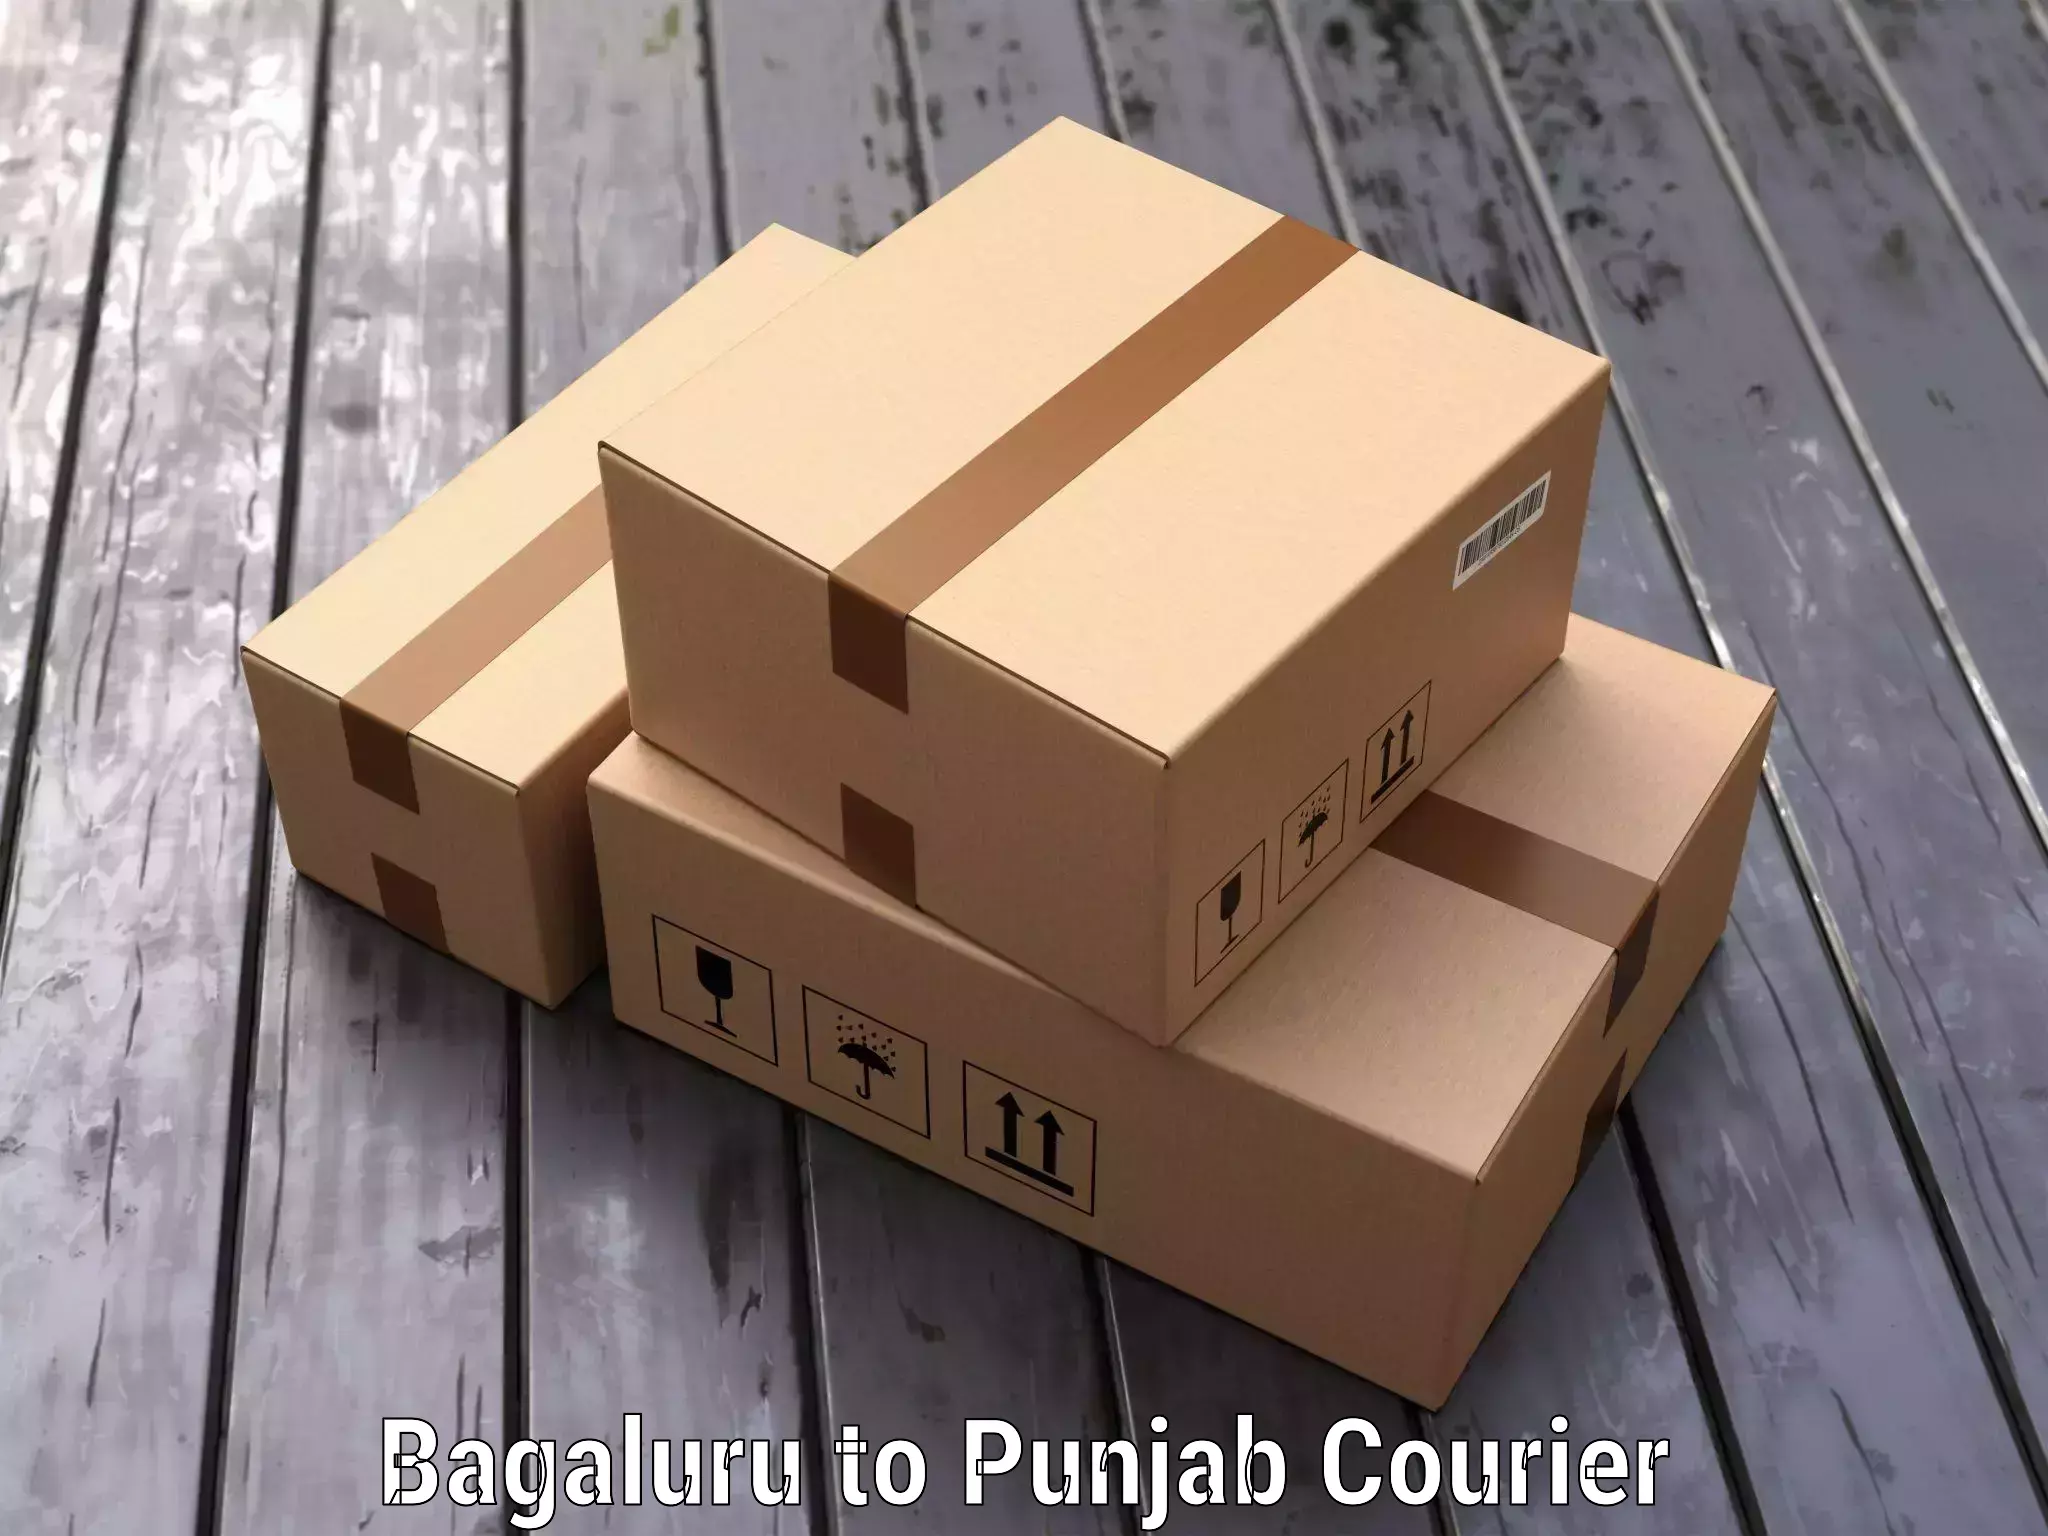 Efficient baggage transport Bagaluru to Punjab